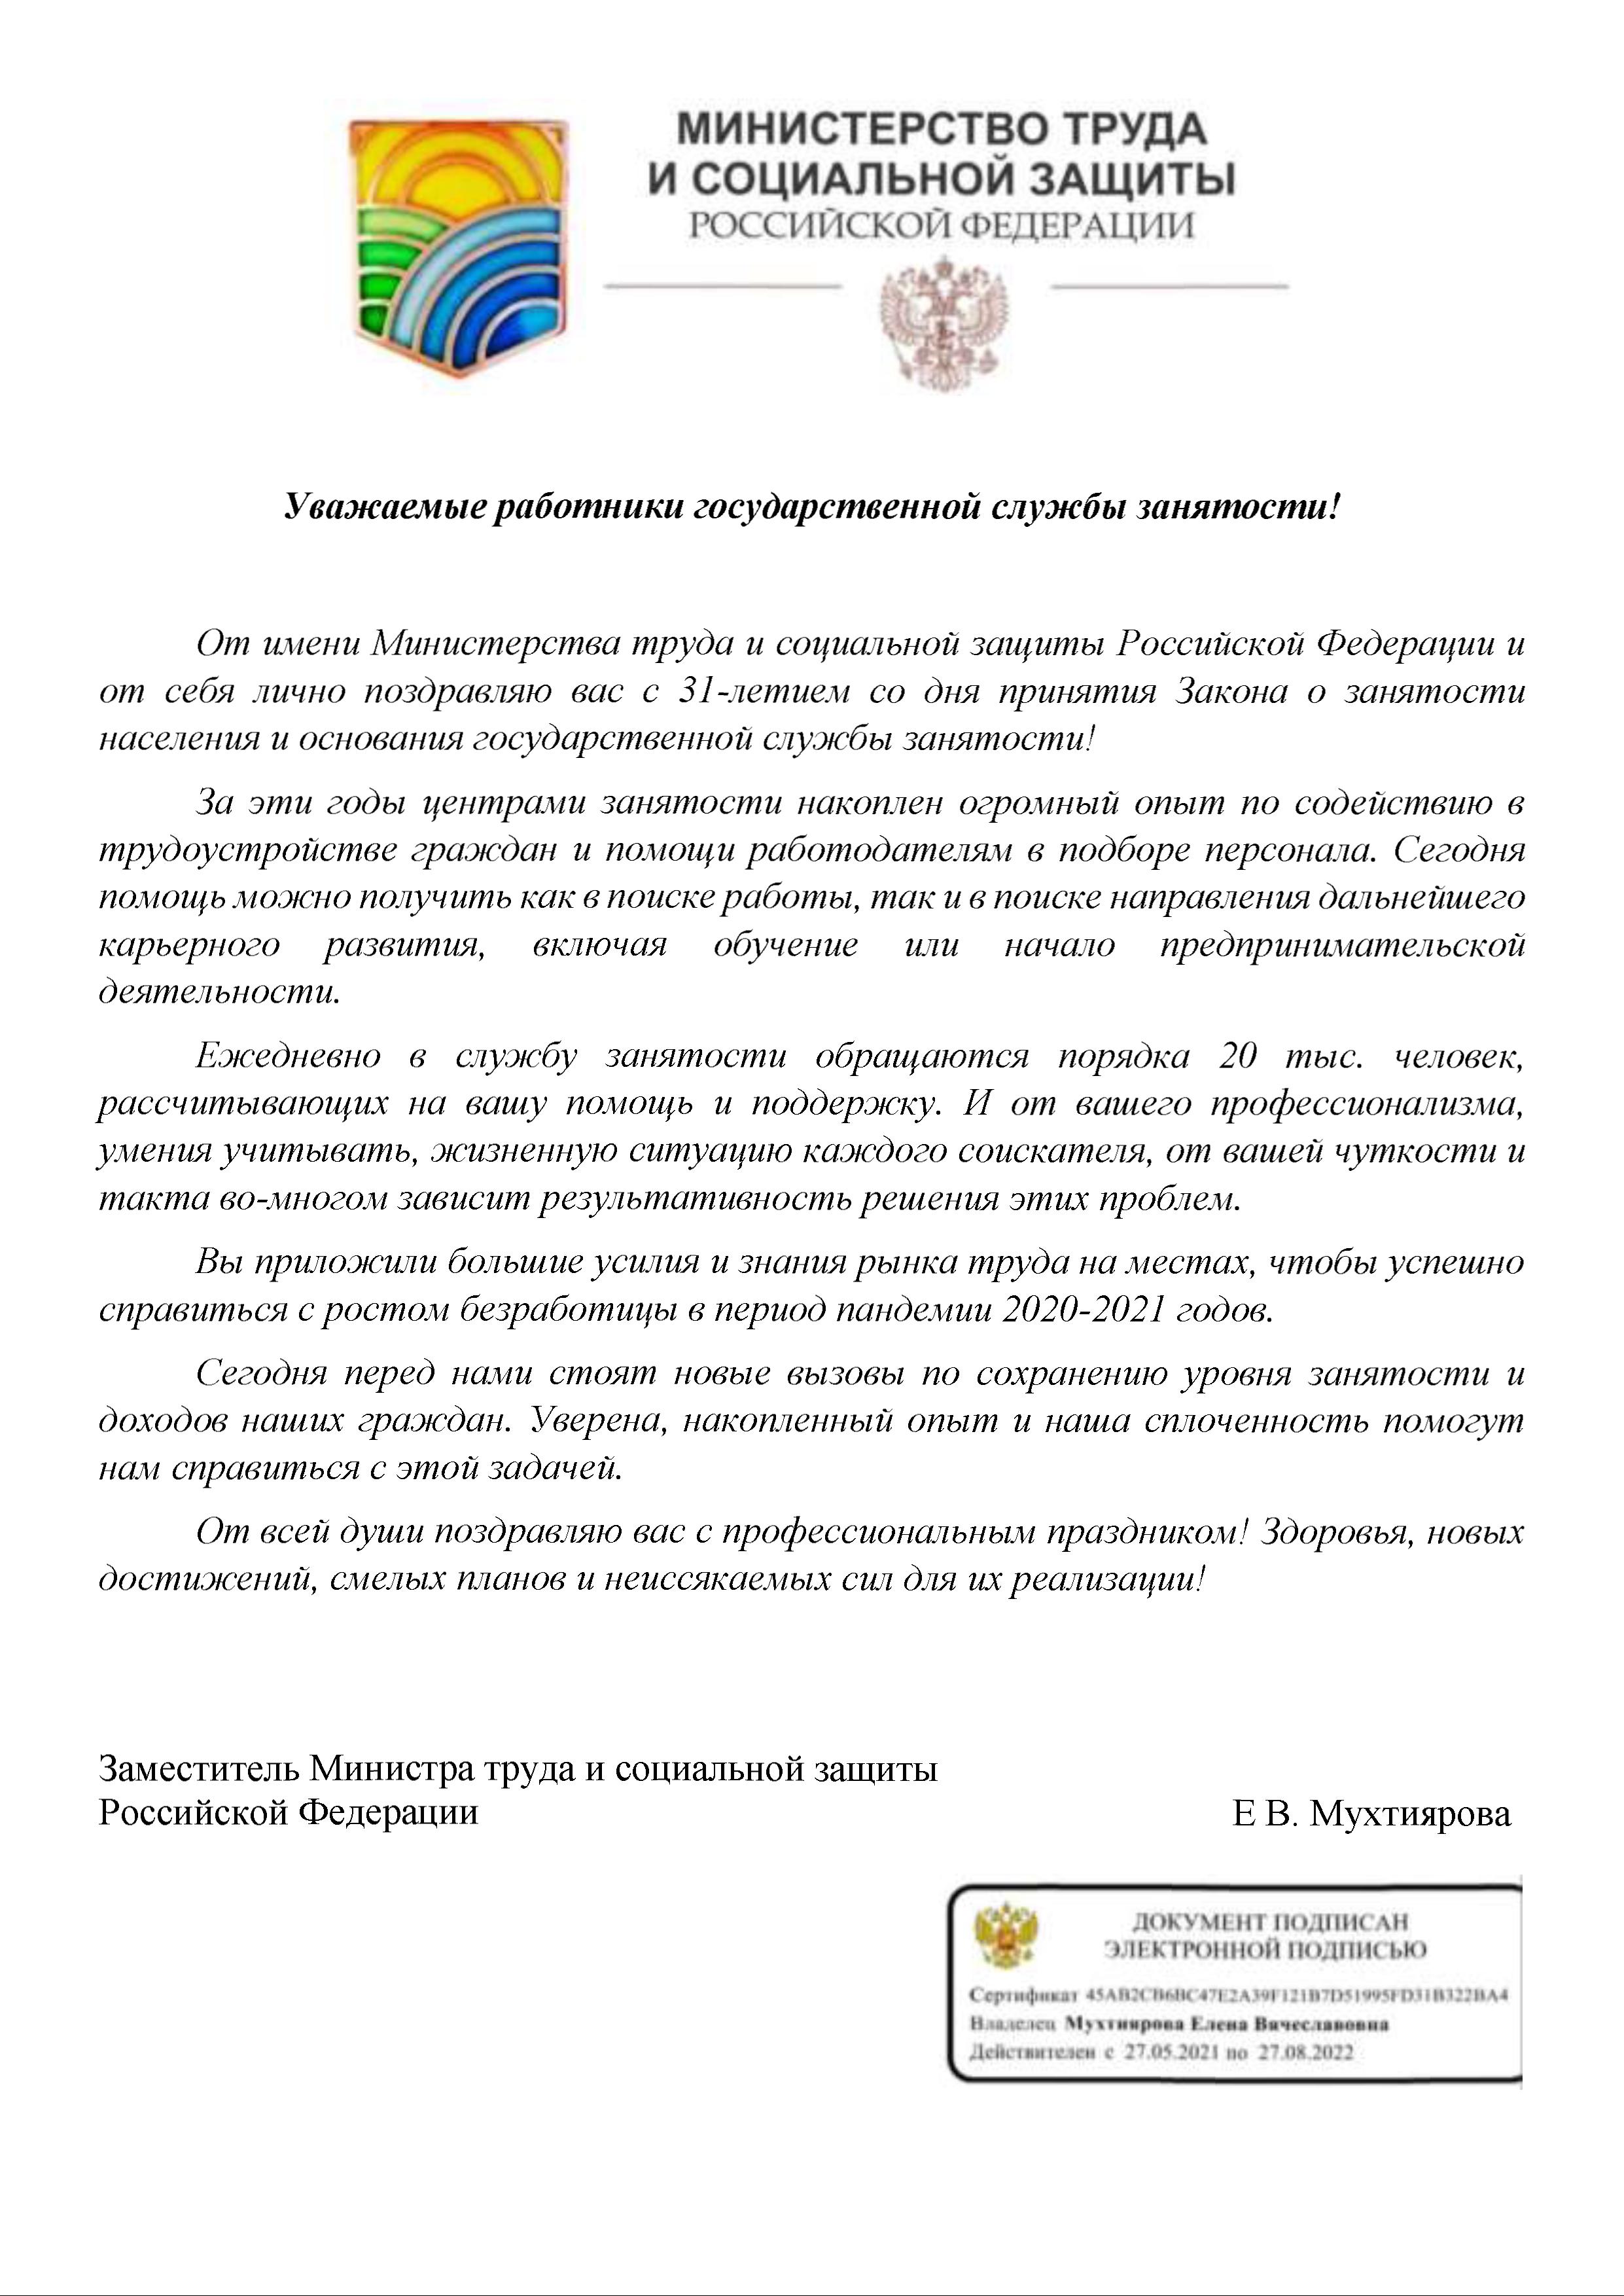 Департамент здравоохранения, труда и социальной защиты населения Ненецкого автономного округа